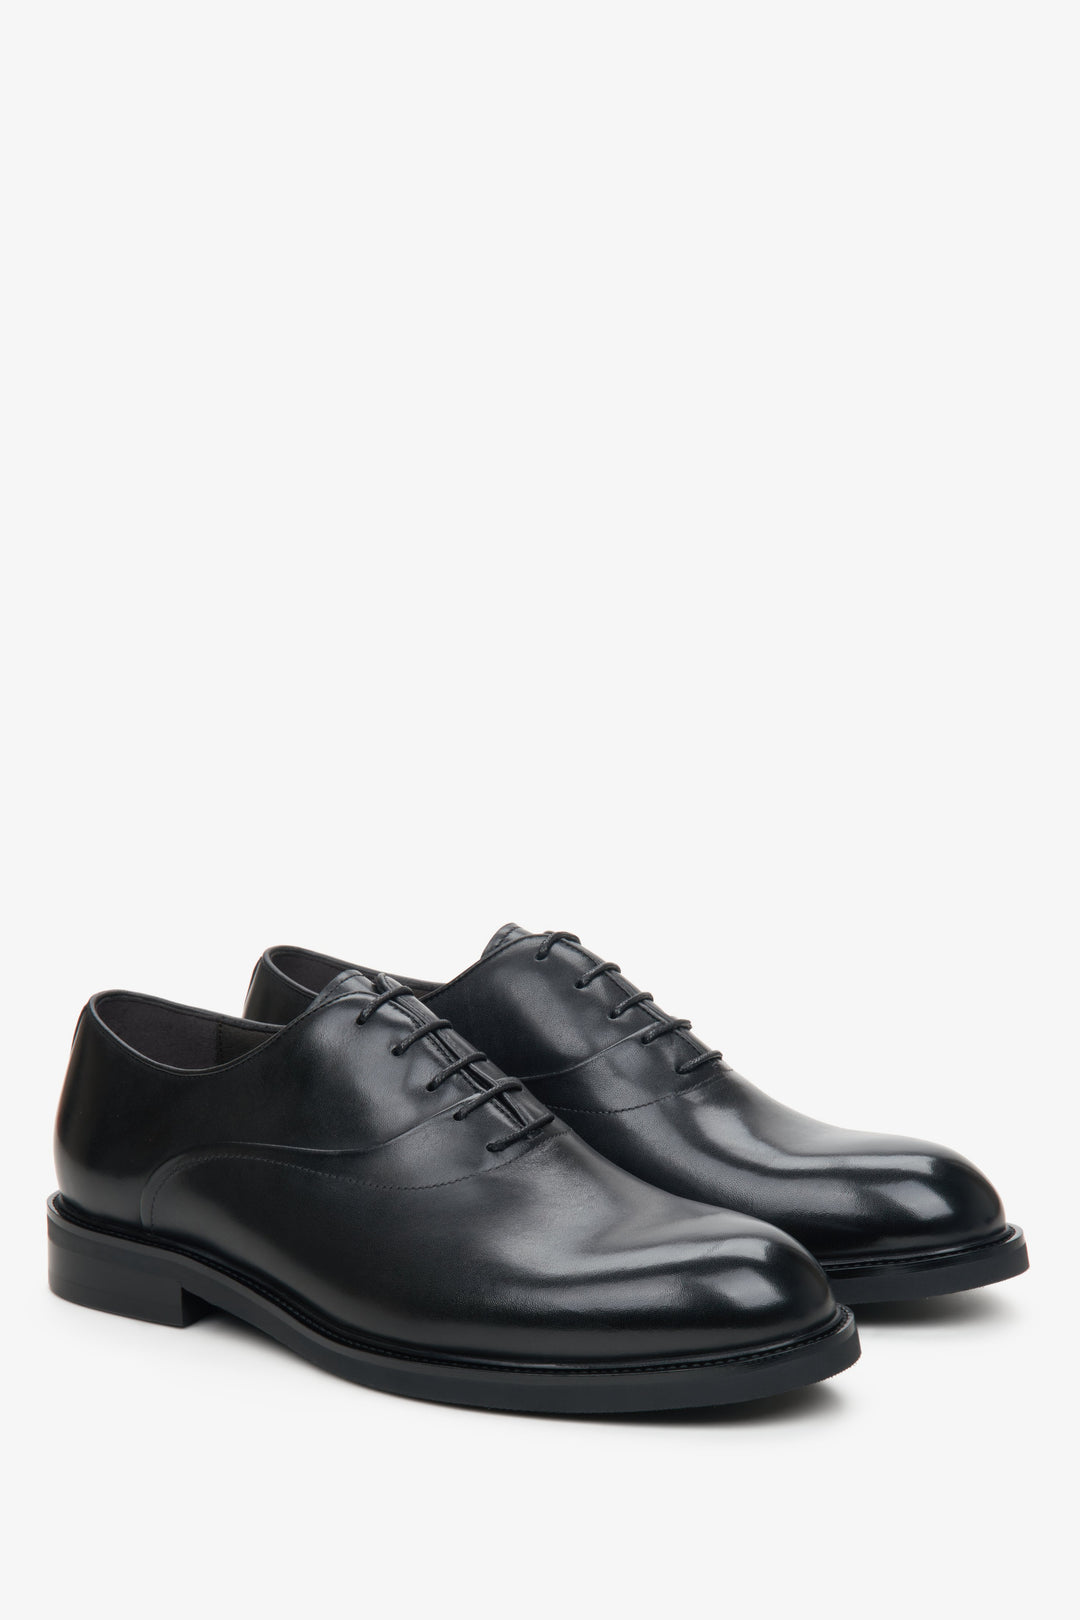 Men's black leather shoes by Estro.